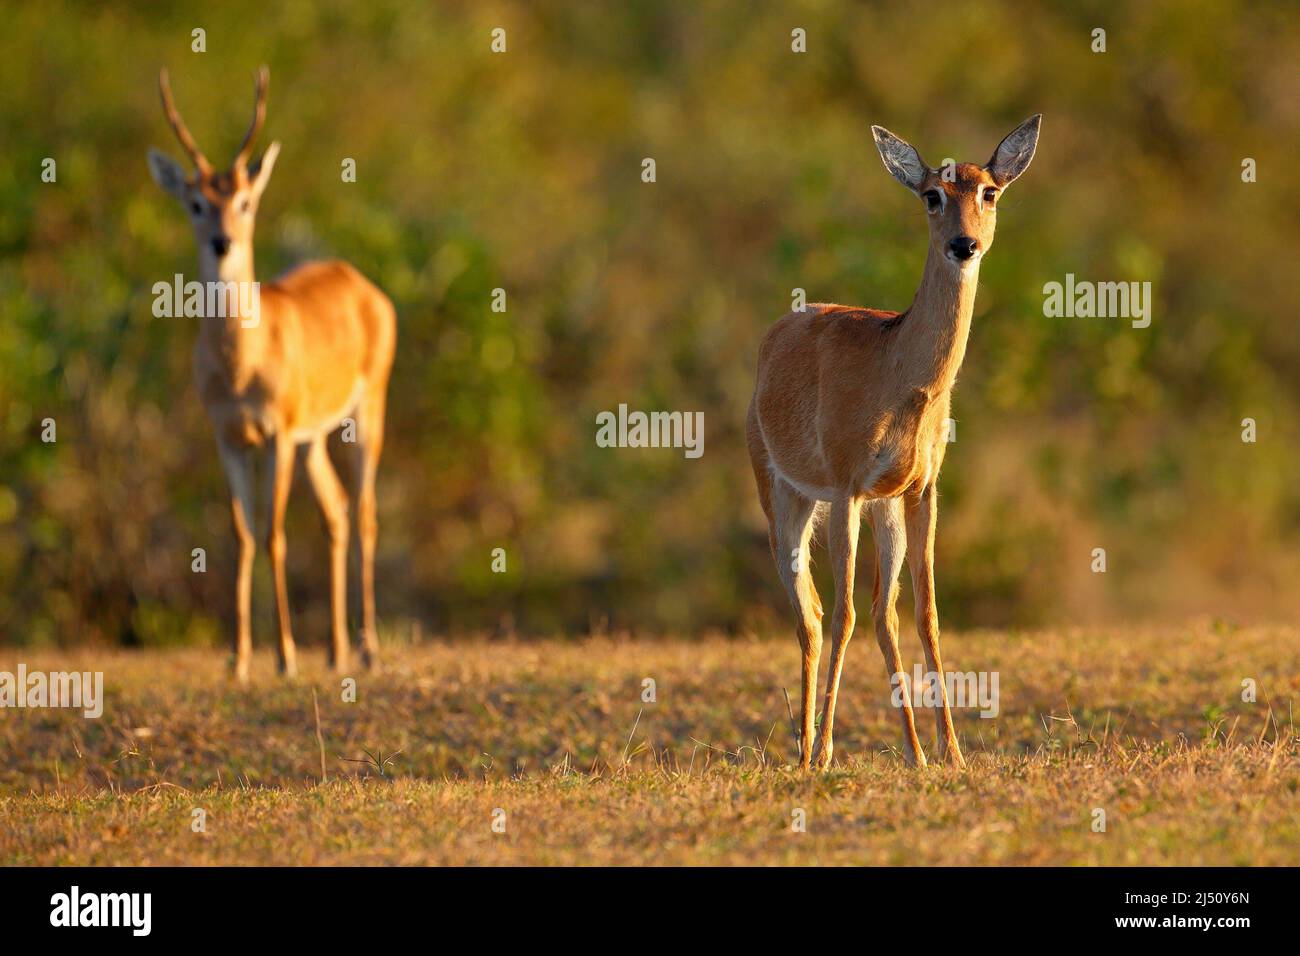 Pampas Deer, Ozotoceros bezoarticus, assis dans l'herbe verte, Pantanal, Brésil. Scène sauvage de la nature. Paire de cerfs, habitat naturel. Faune Banque D'Images